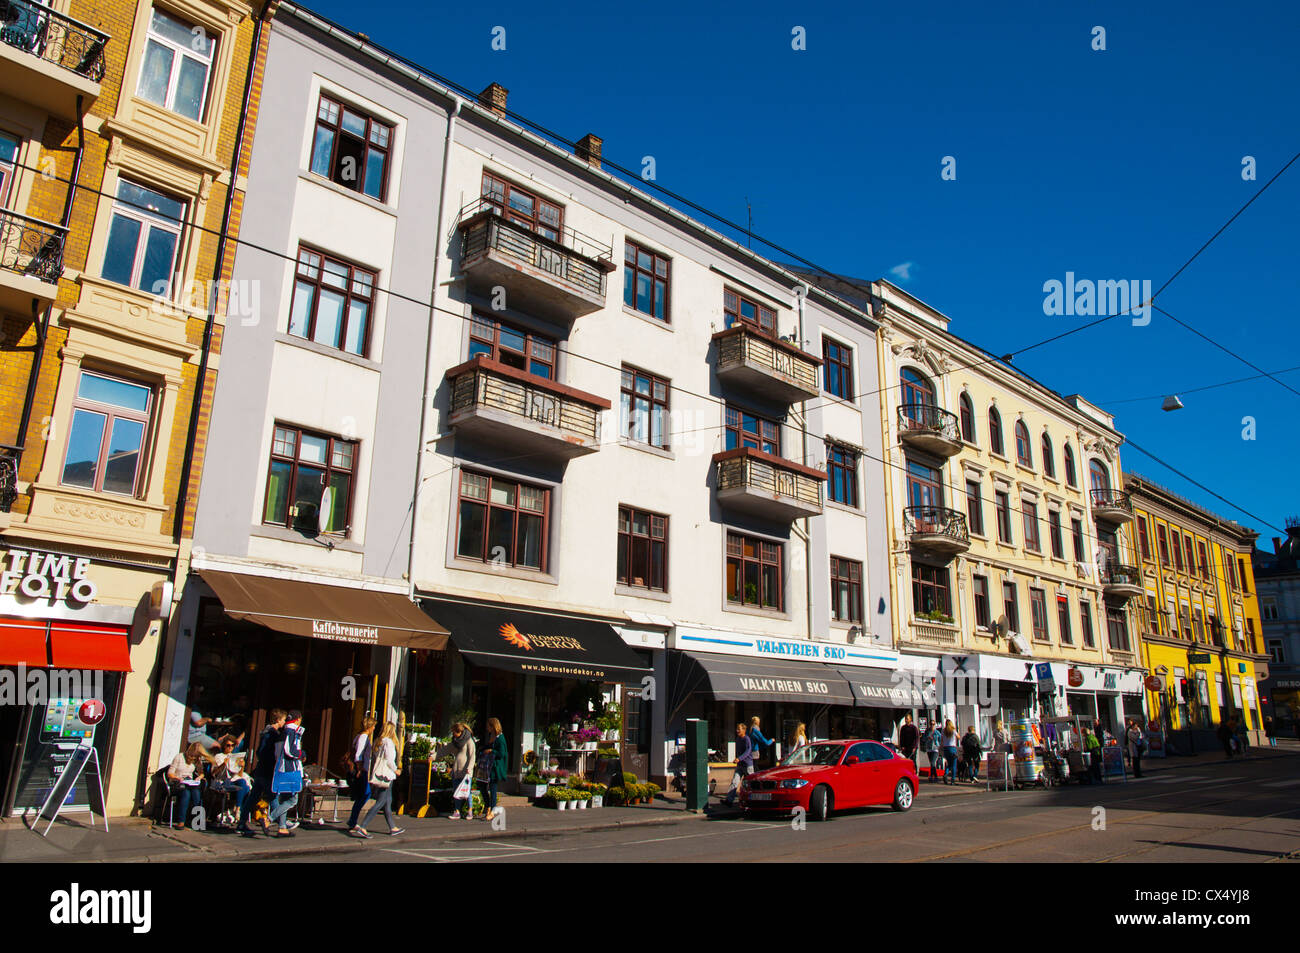 Valkyriegata street Majorstuen district Oslo Norway Europe Stock Photo -  Alamy